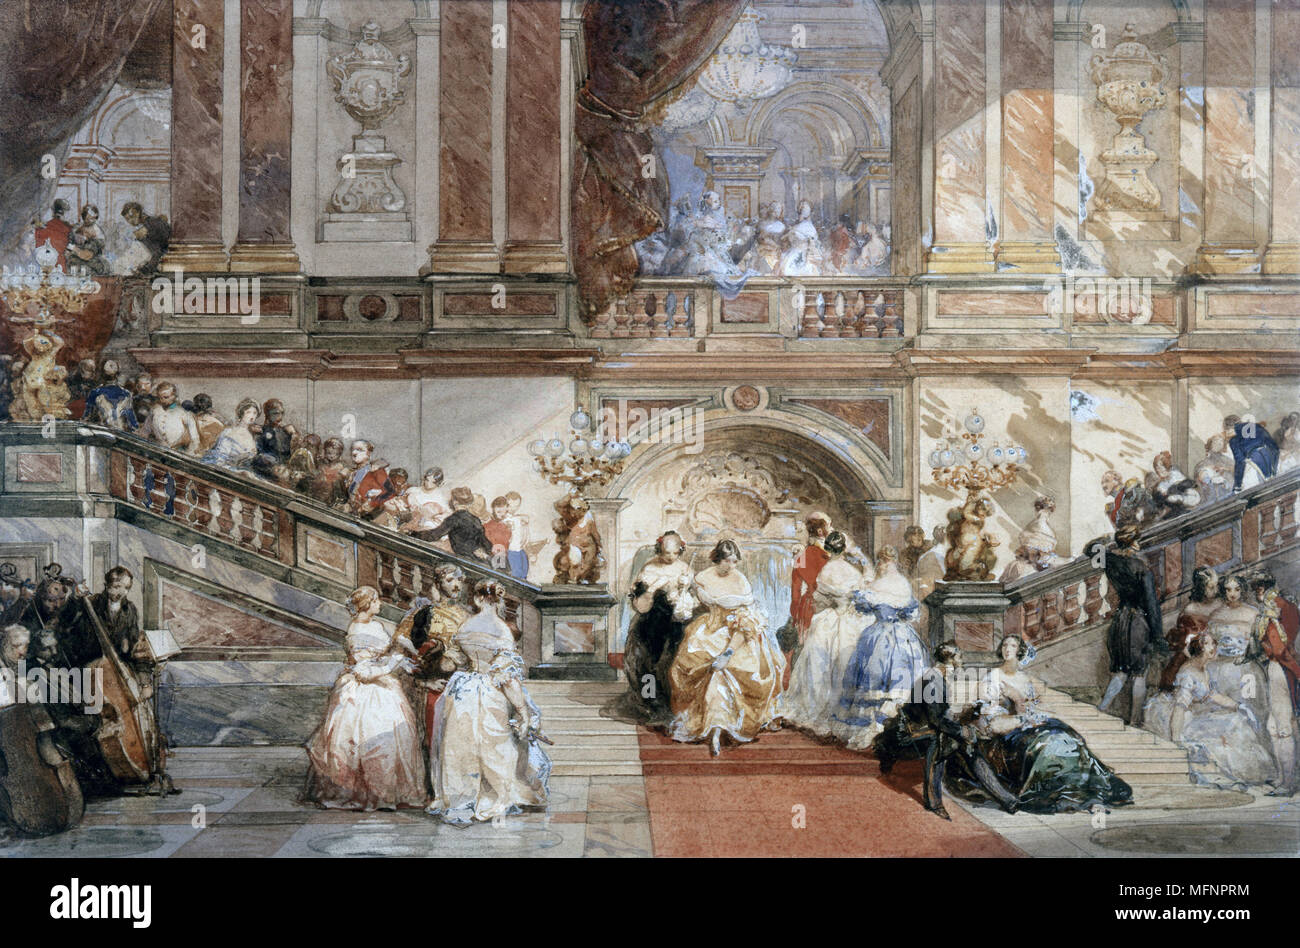 Bal à l'Hôtel de Ville c1860. L'aquarelle. Eugène Lami (1800-1890) peintre français. Escalier en marbre avec des invités présents à la mode à Paris. L'opulence de l'Orchestre de musique de divertissement de la société Banque D'Images